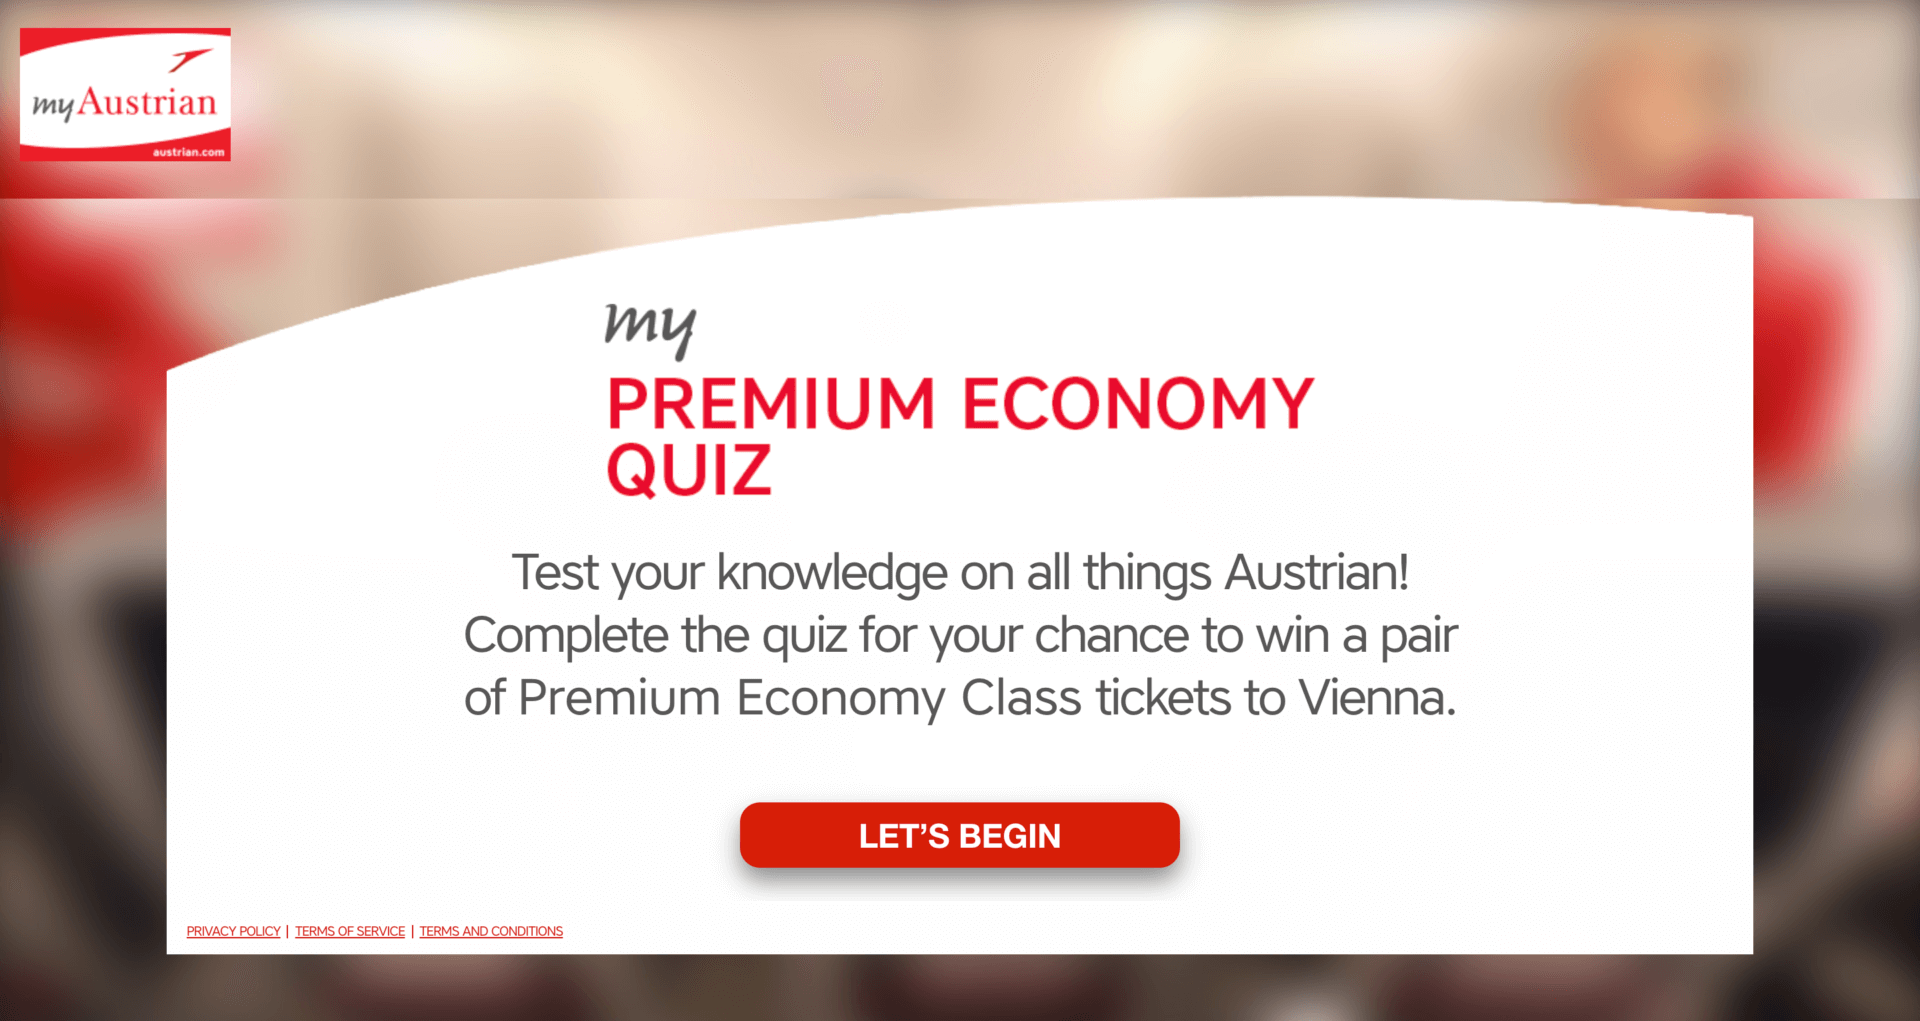 Austrian Airlines Quiz 